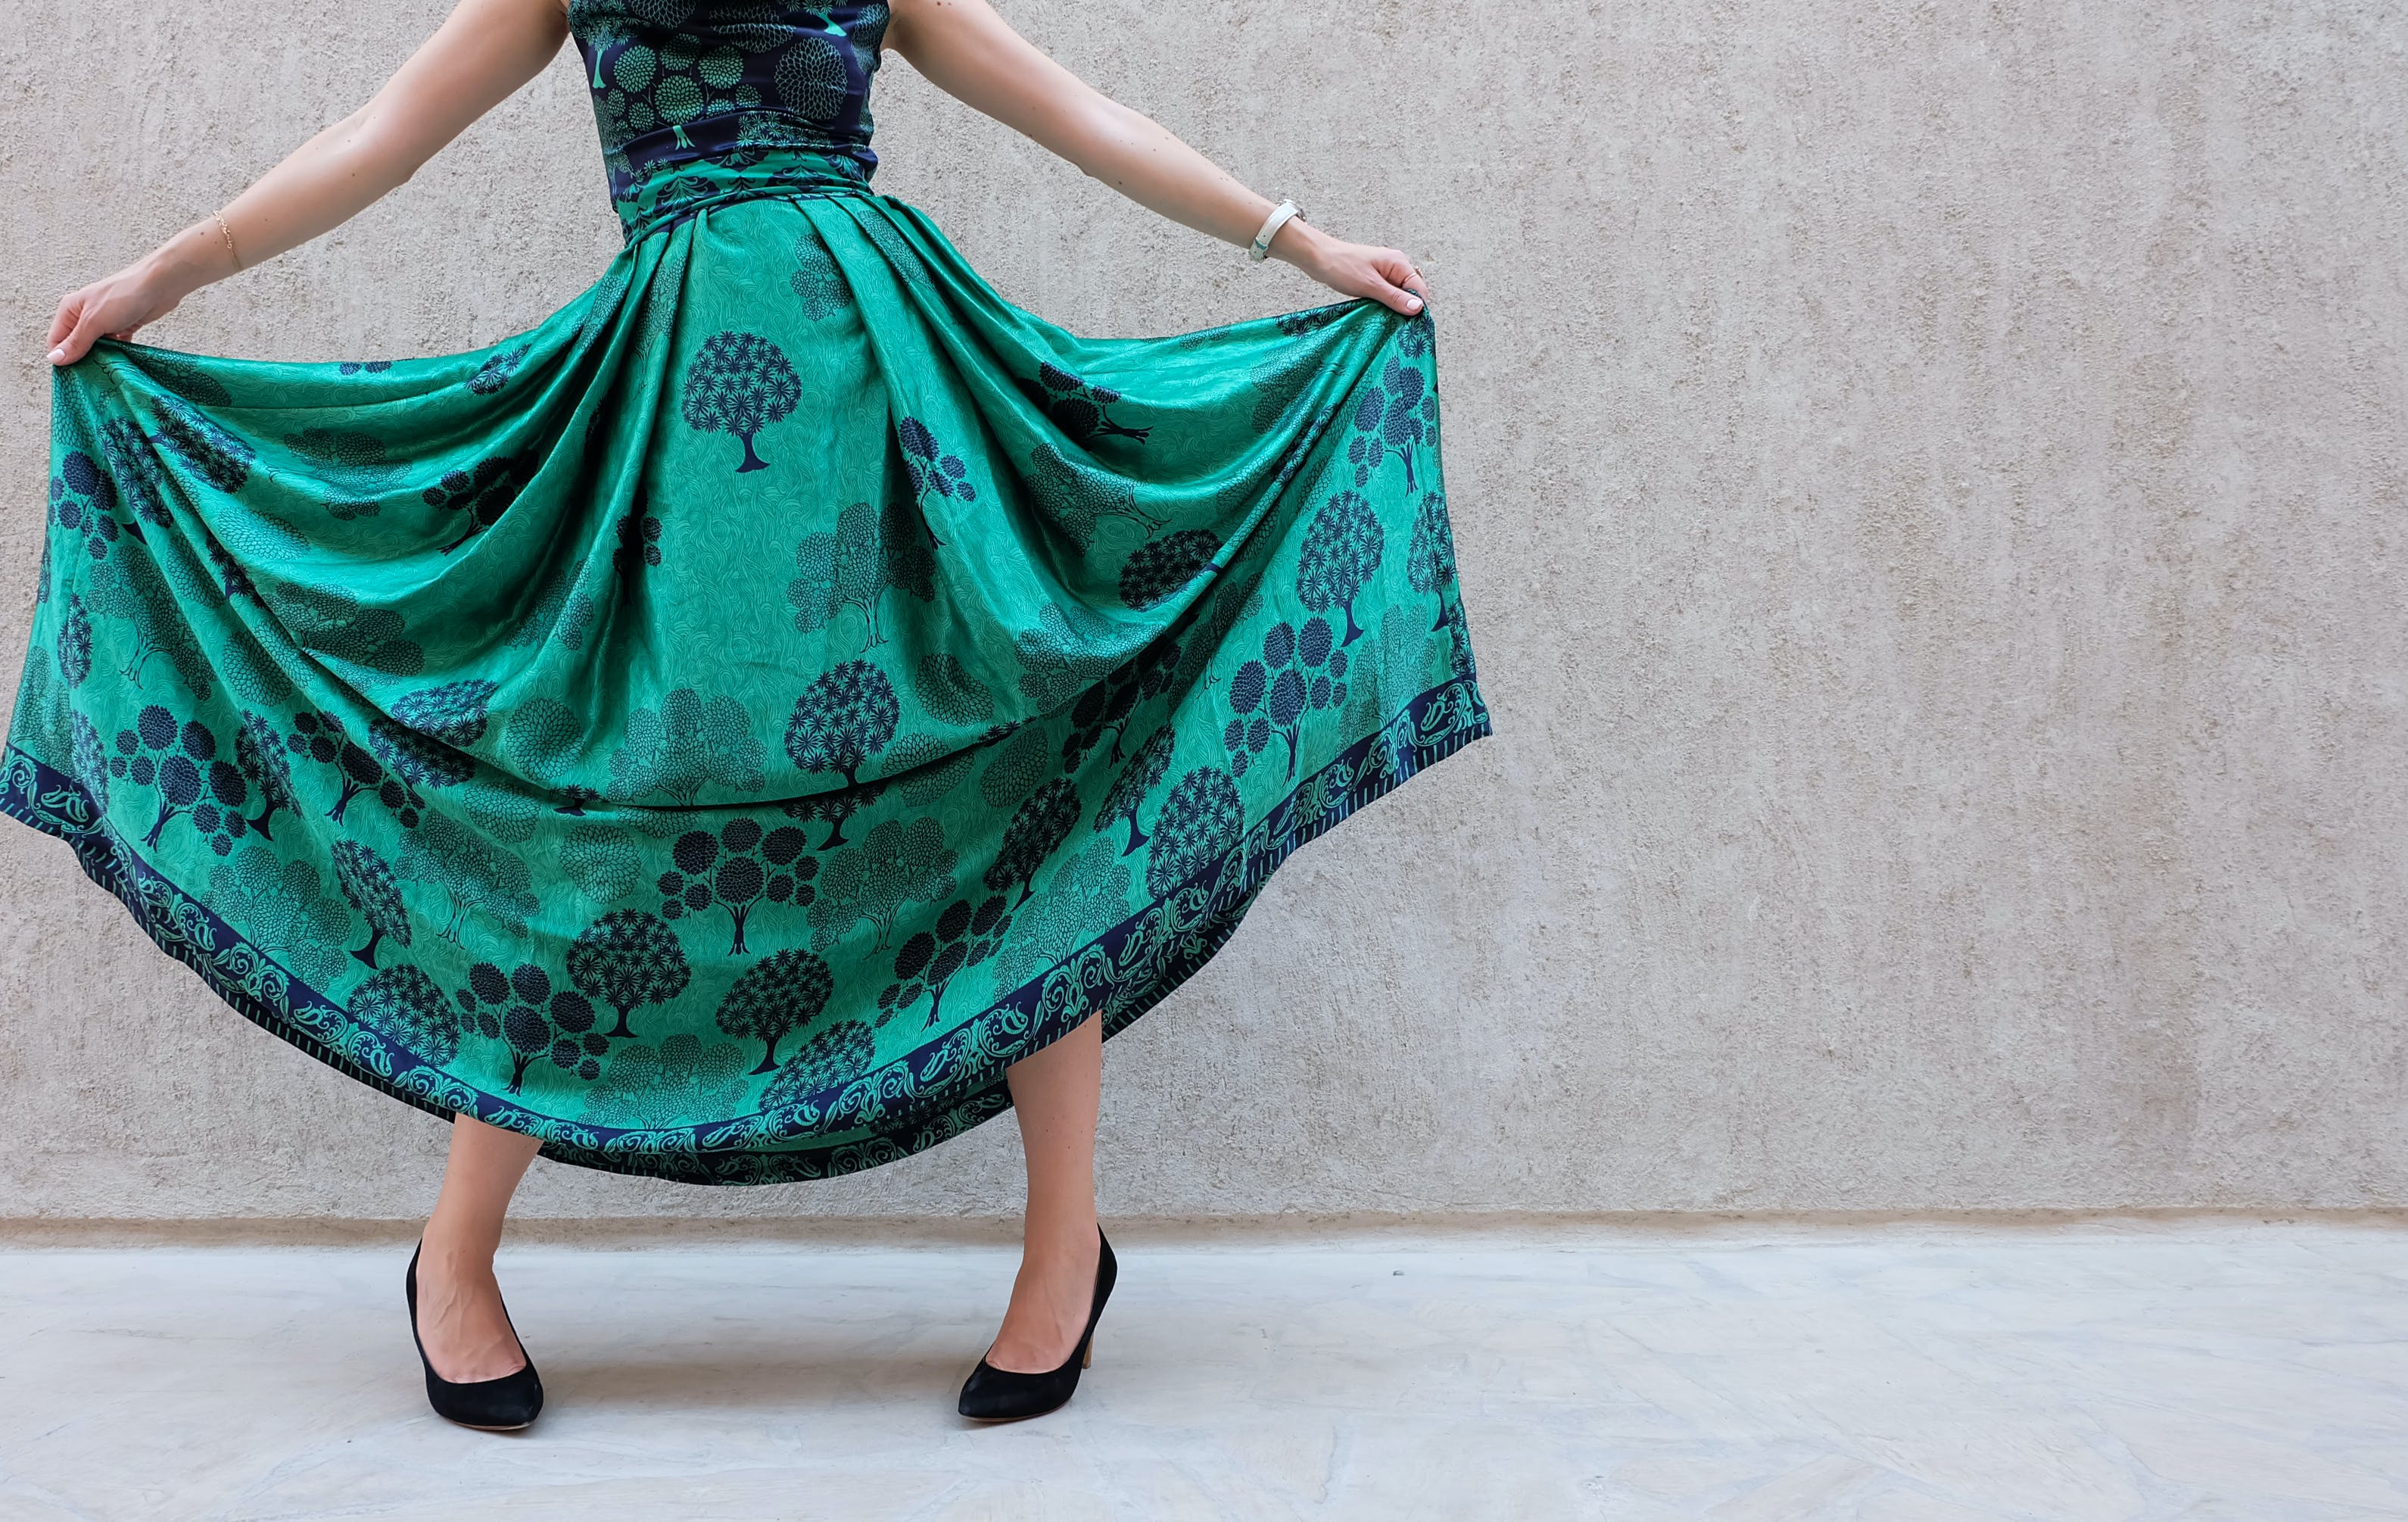 Кожаный тренд, легкость шелка и толстые ткани – популярные материалы модной юбки в холодный сезон